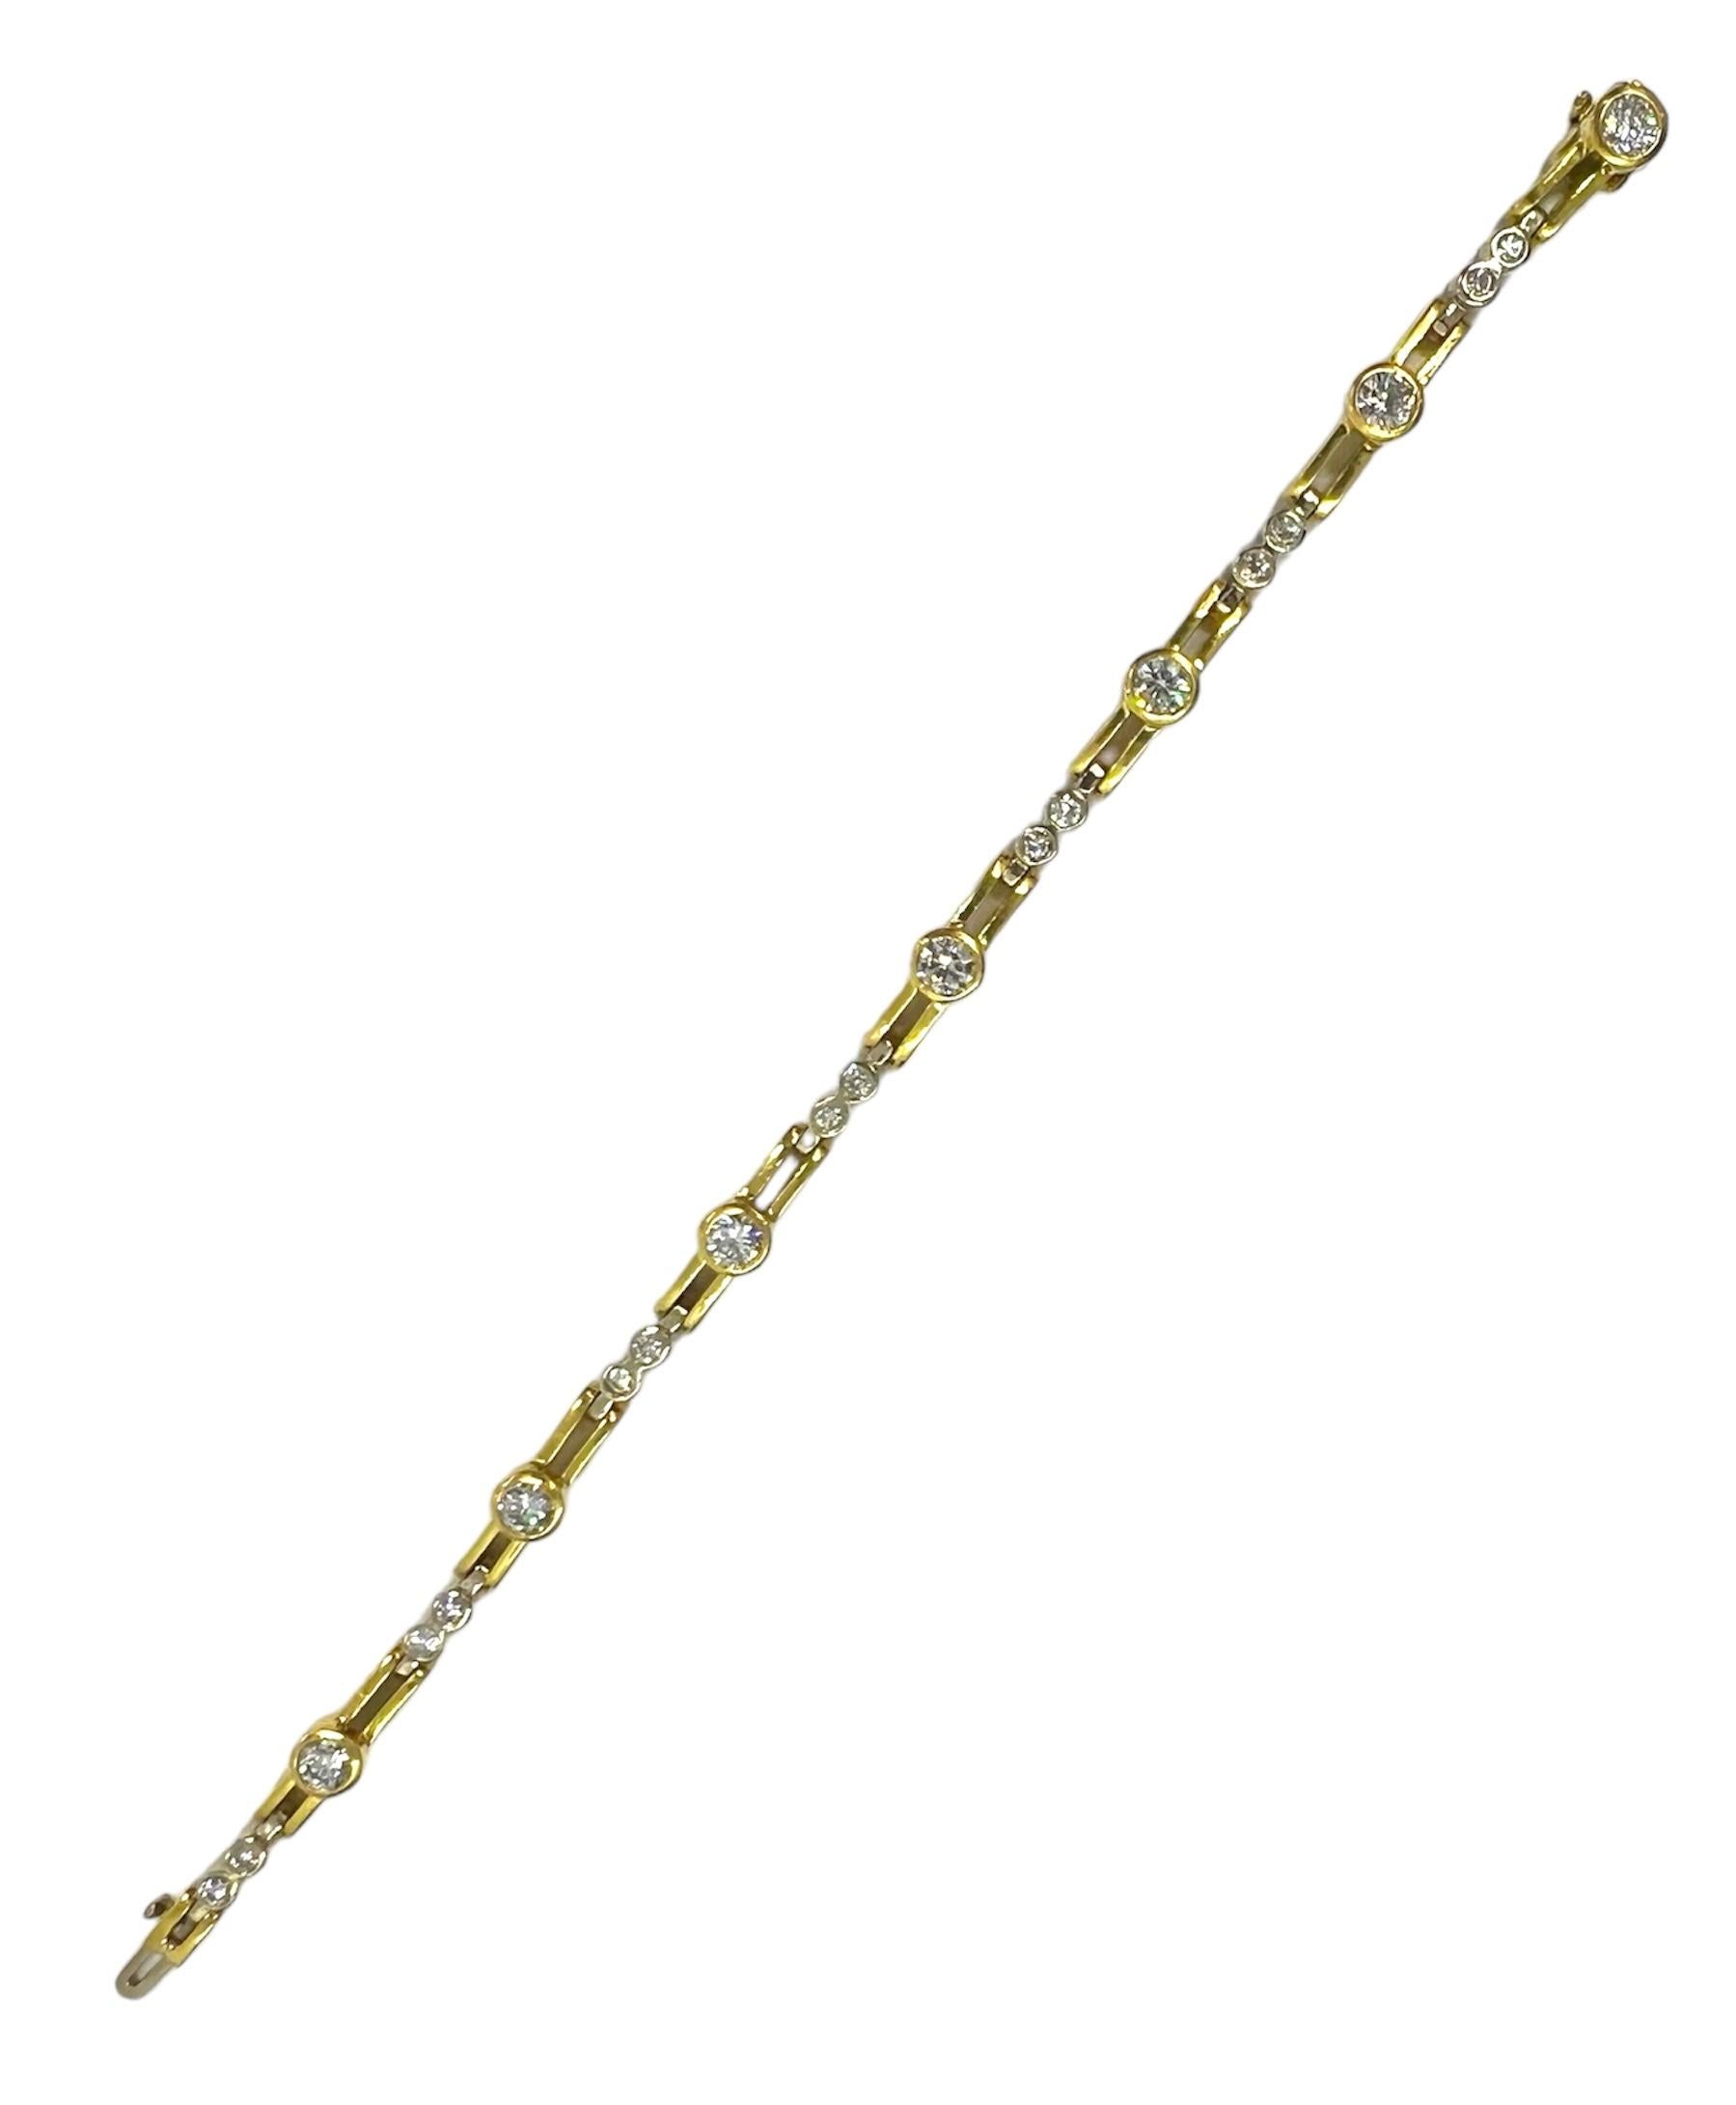 Bracelet en or jaune 18K avec des diamants ronds.

Sophia D by Joseph Dardashti Ltd est connue dans le monde entier depuis 35 ans et s'inspire du design classique de l'Art déco qui fusionne avec les techniques de fabrication modernes.

